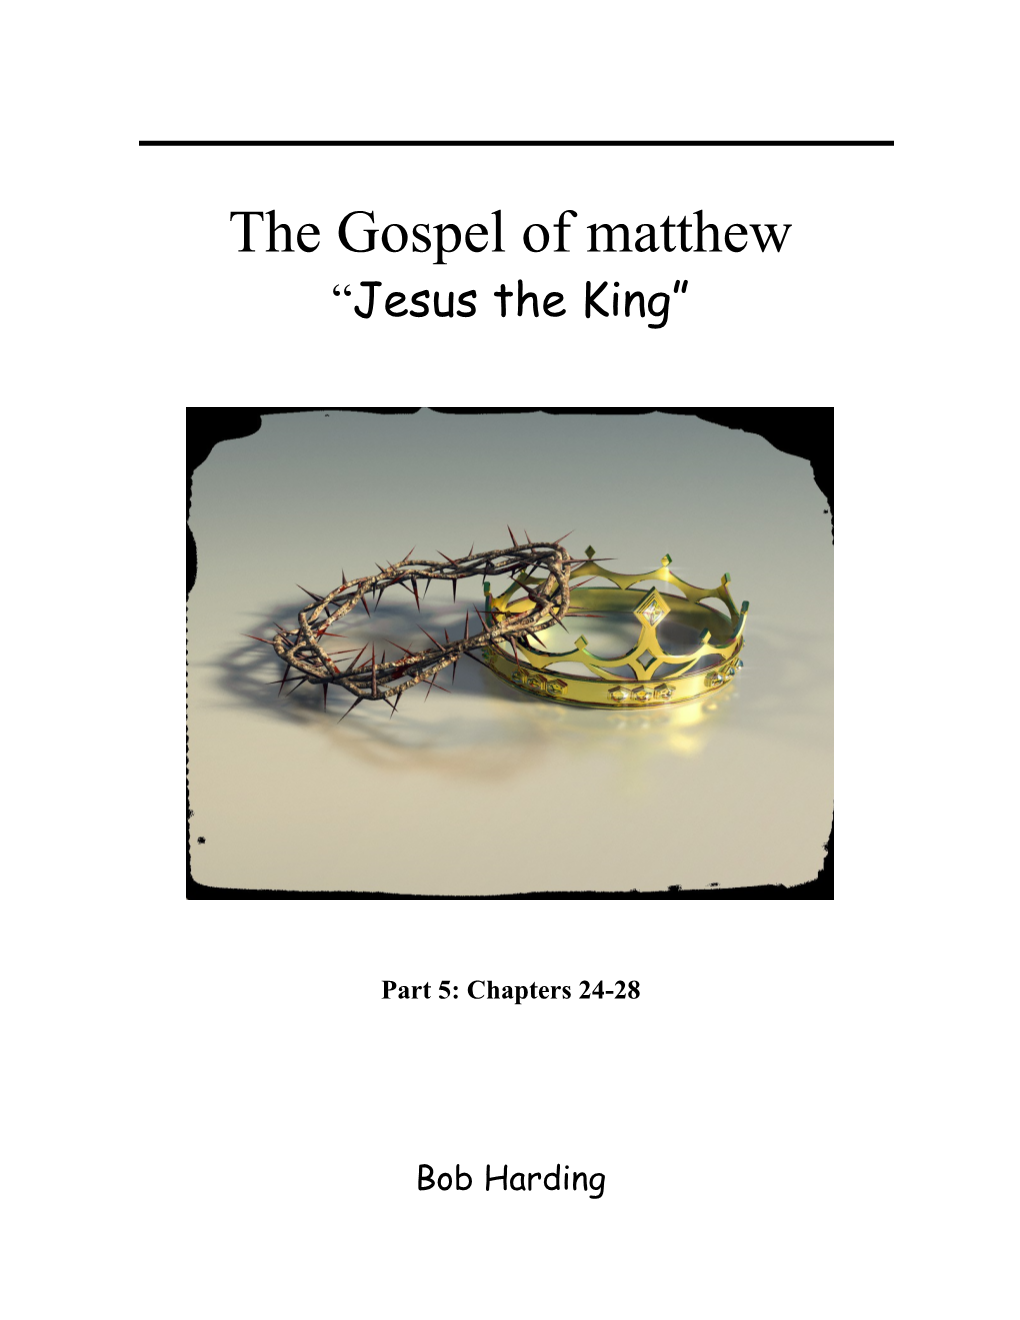 The Gospel of Matthew s2